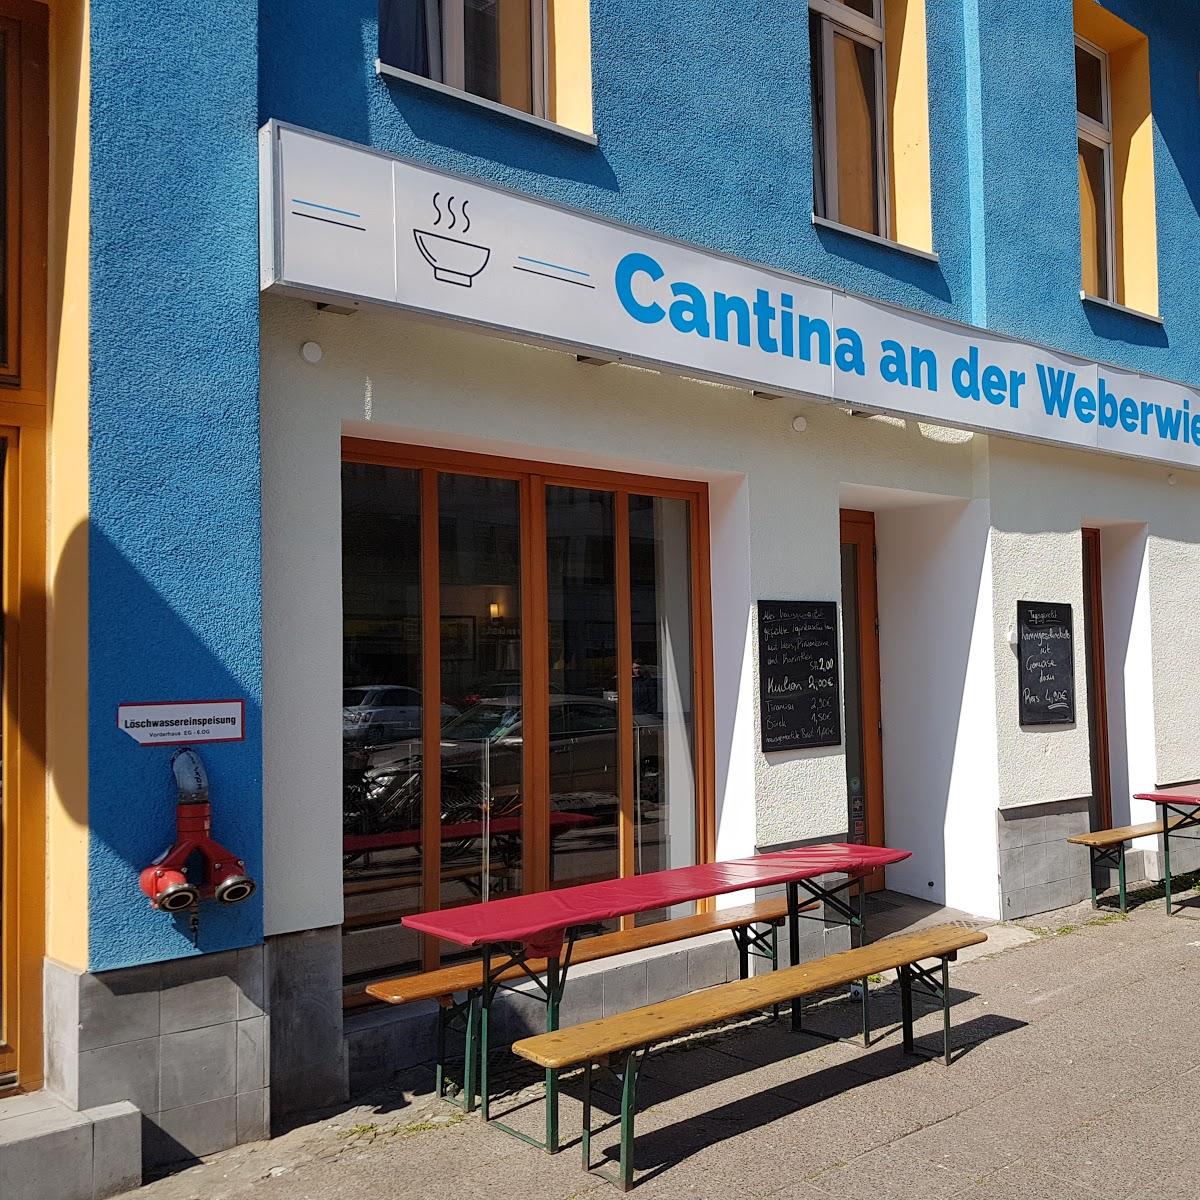 Restaurant "Cantina an der Weberwiese" in Berlin